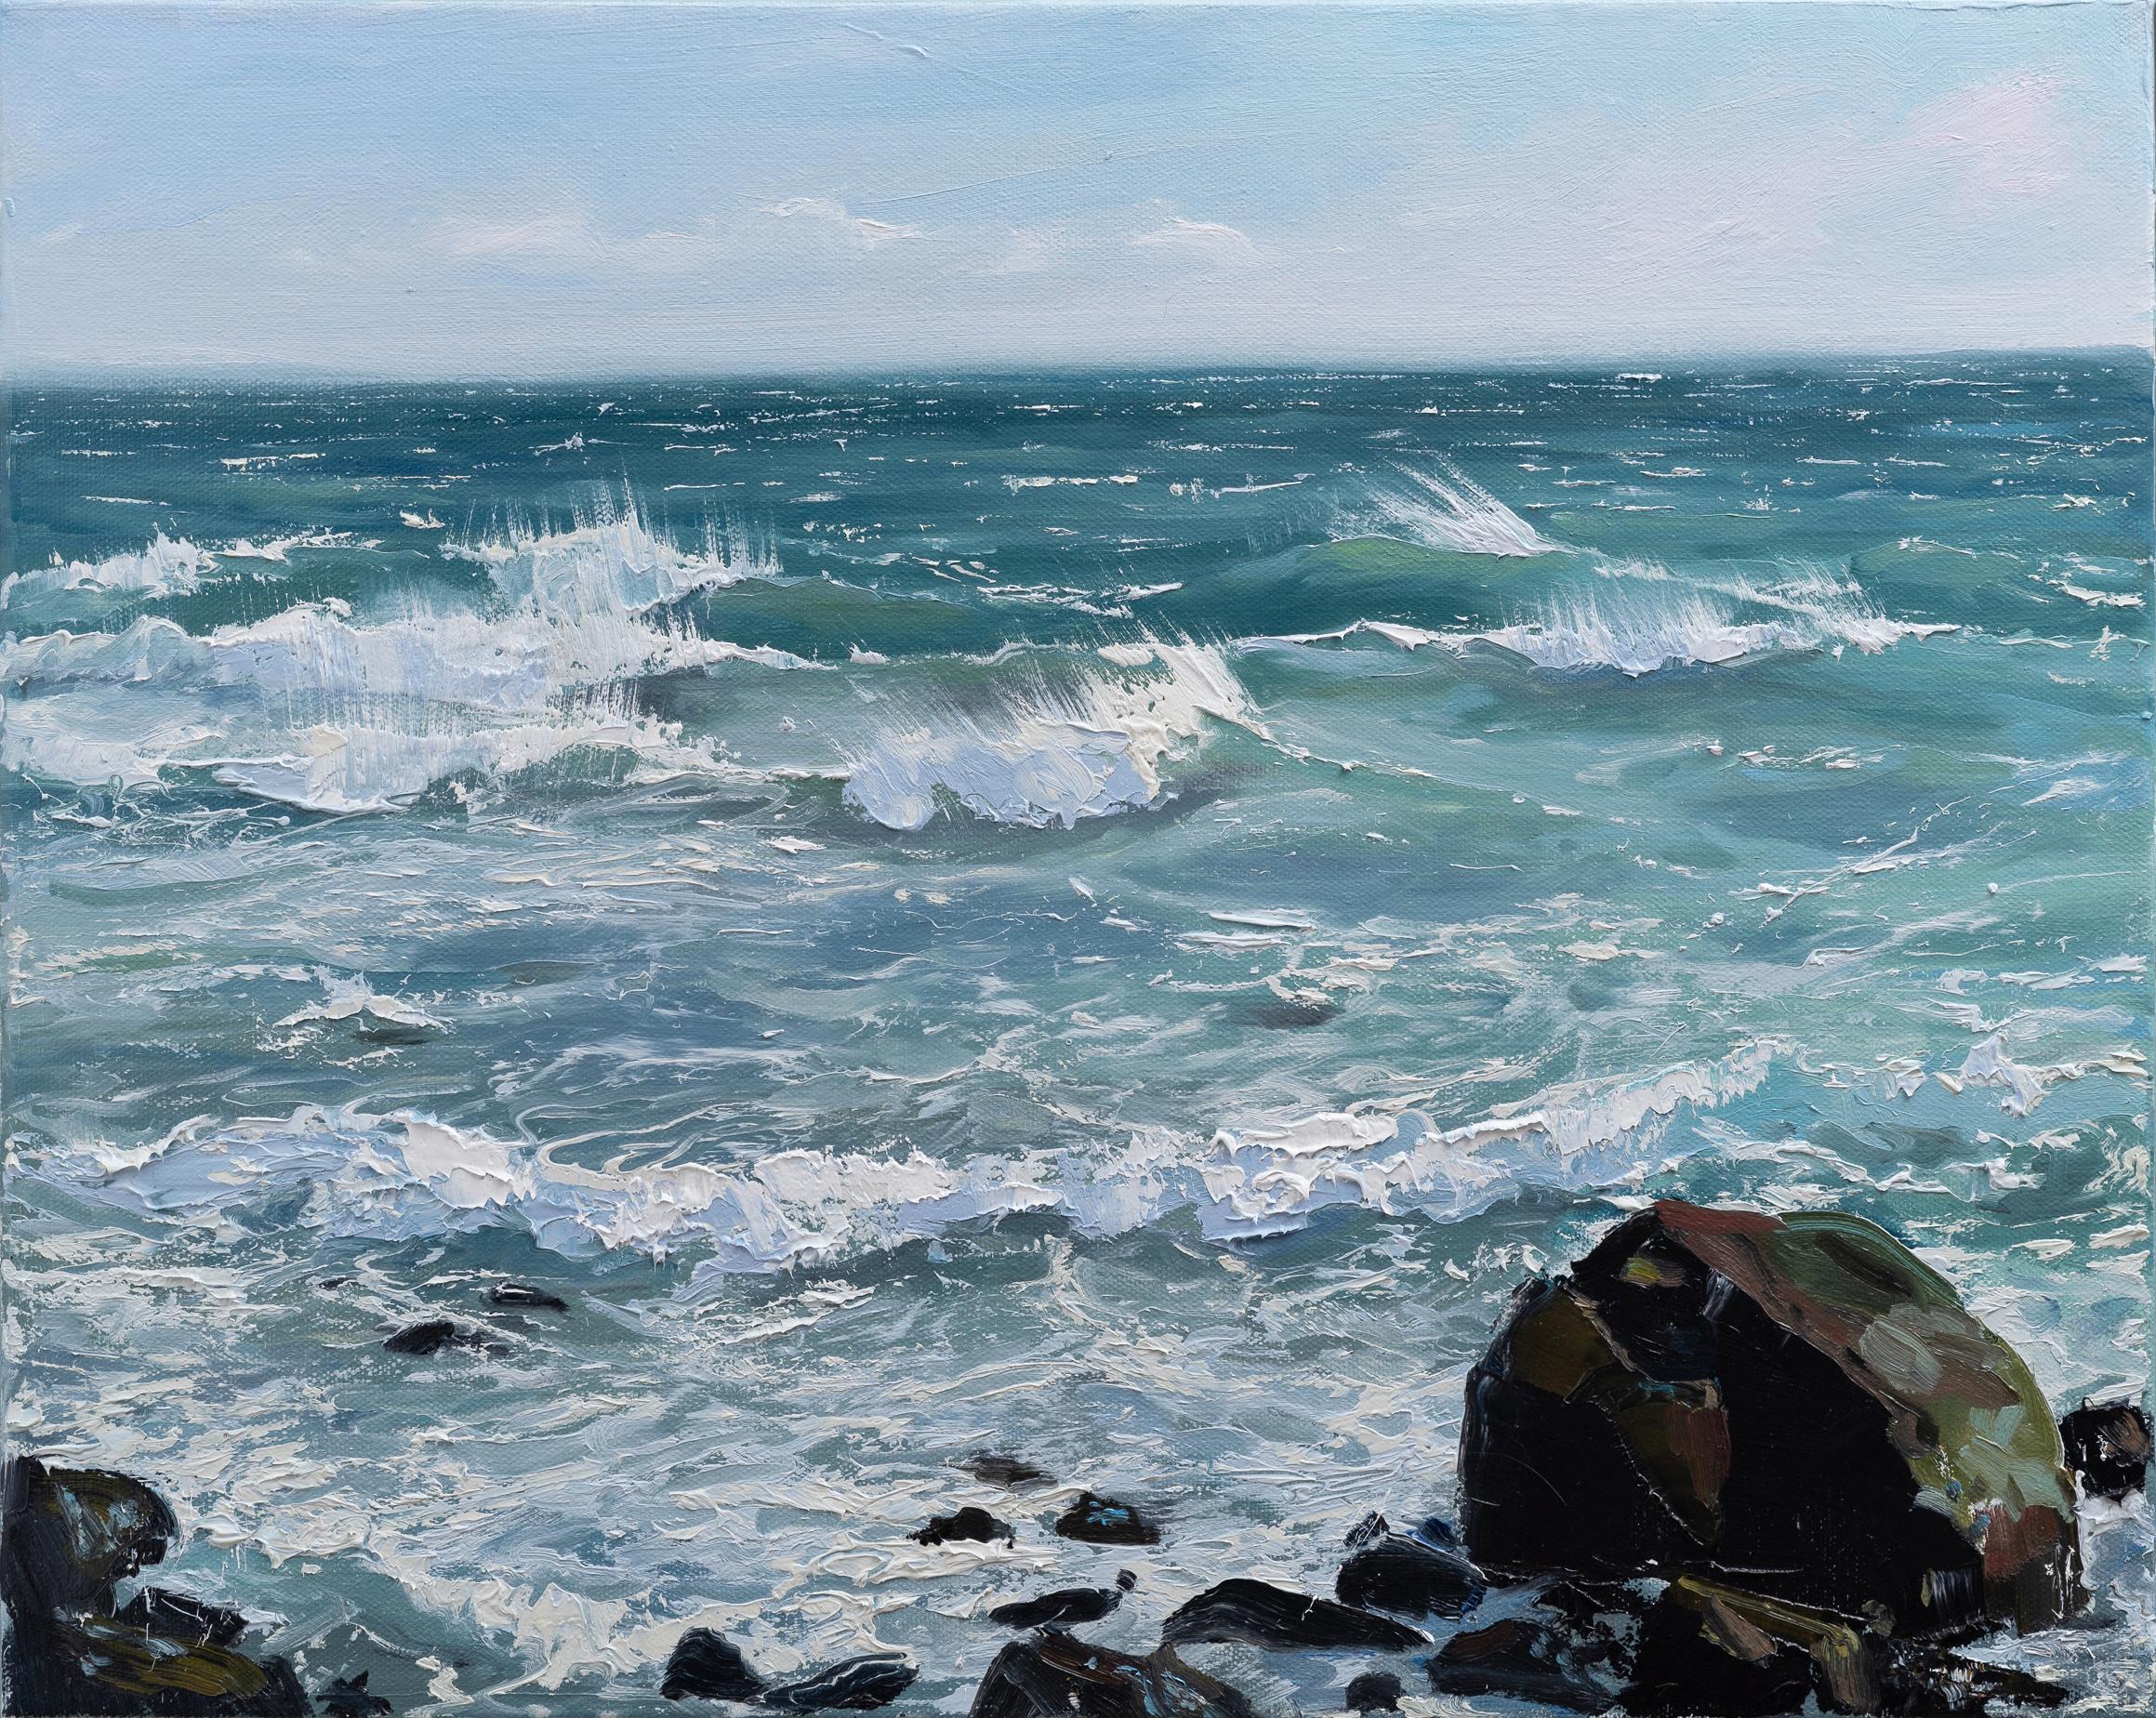 Annie Wildey Landscape Painting - "Summer Rocks n' Surf II" oil painting of waves crashing on rocks in the ocean